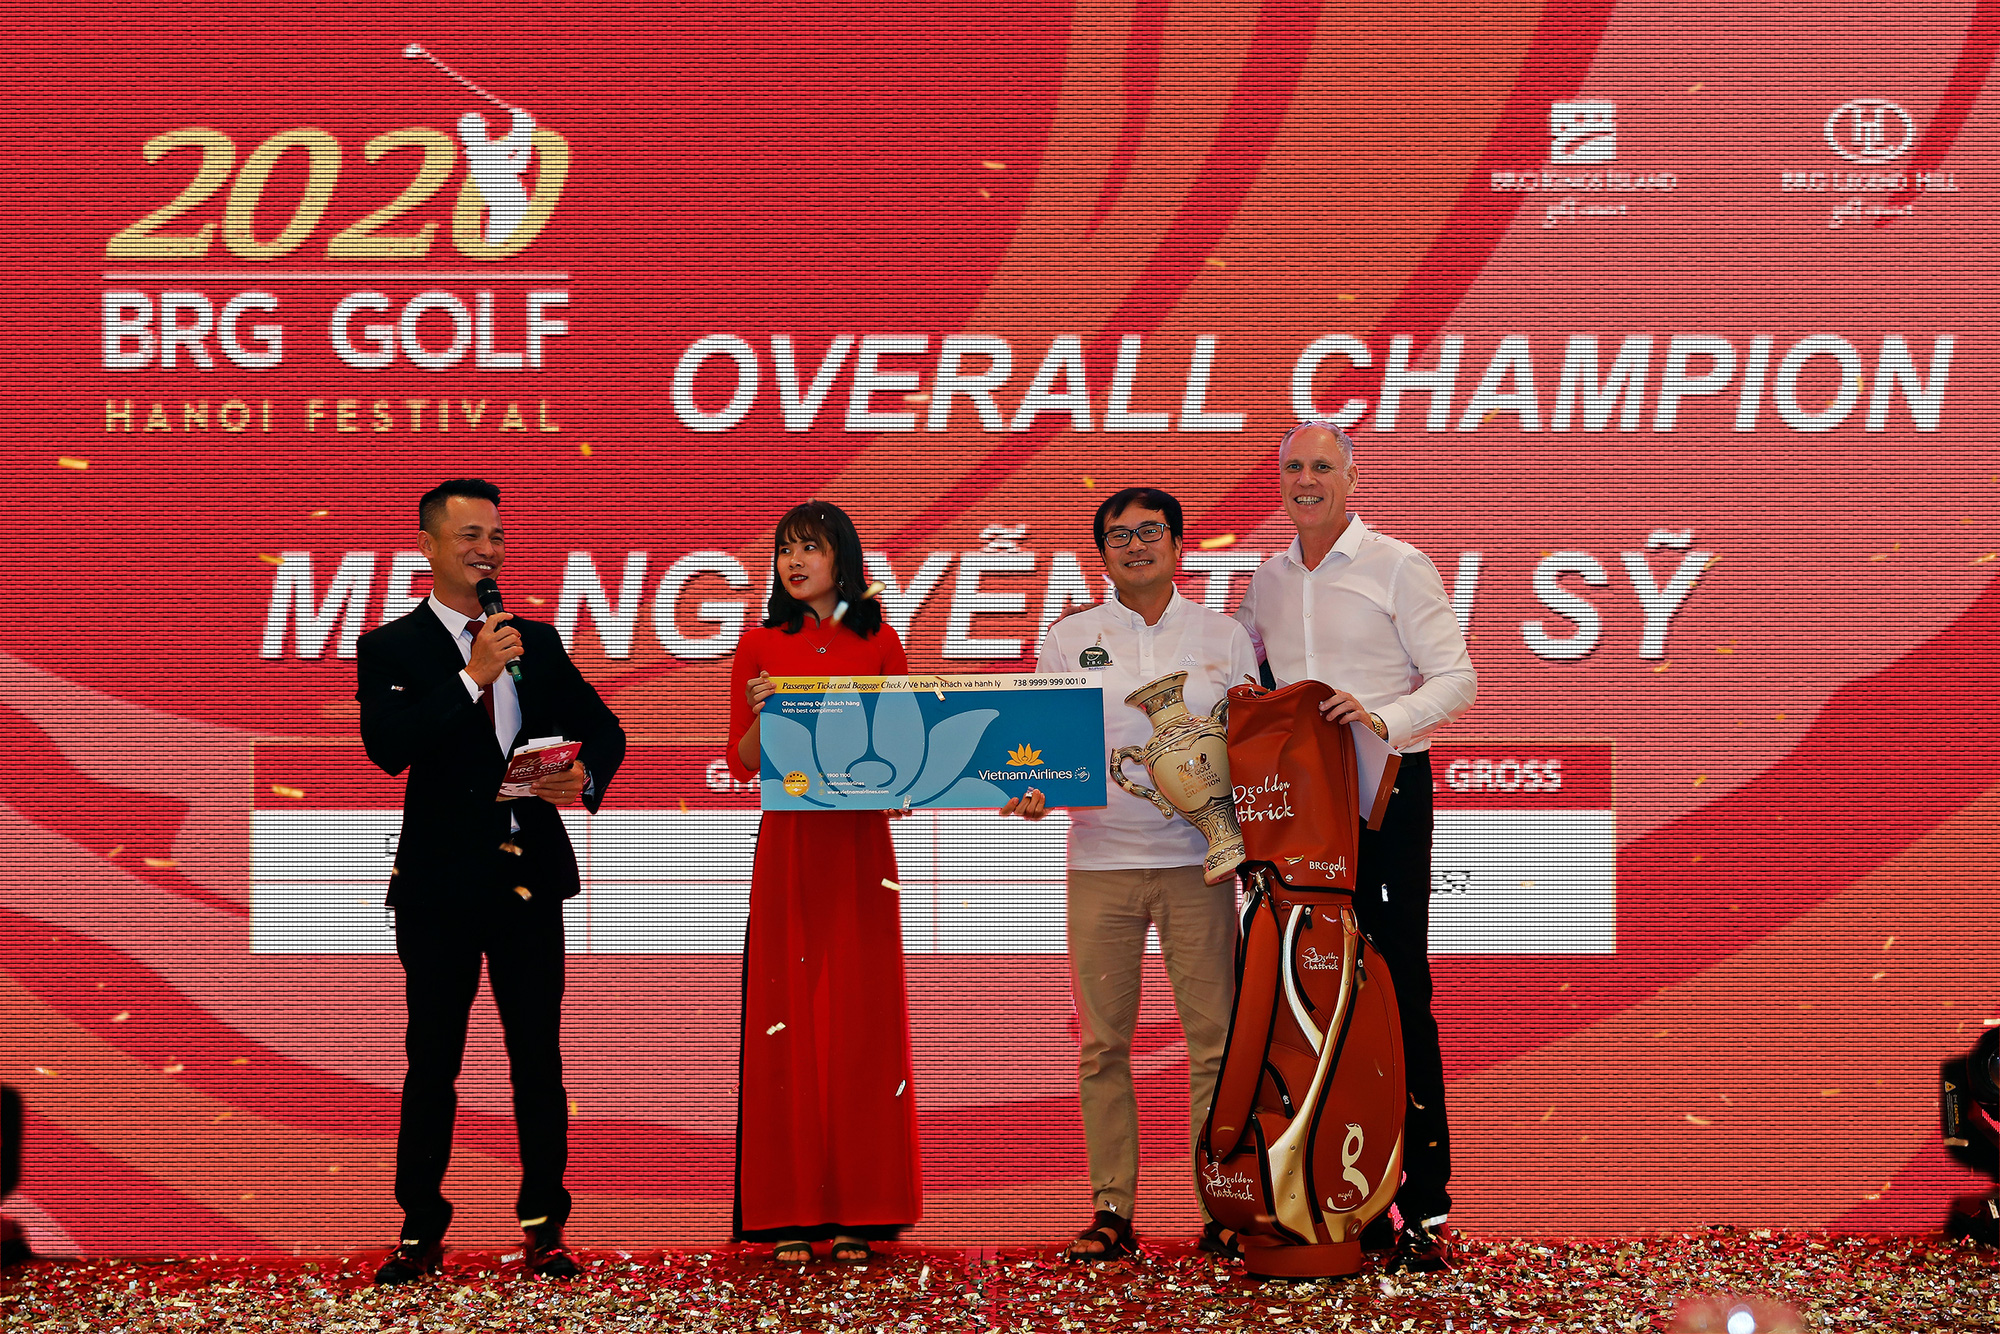 Giải BRG Golf Hanoi Festival 2020 với tình yêu thể thao  - Ảnh 1.